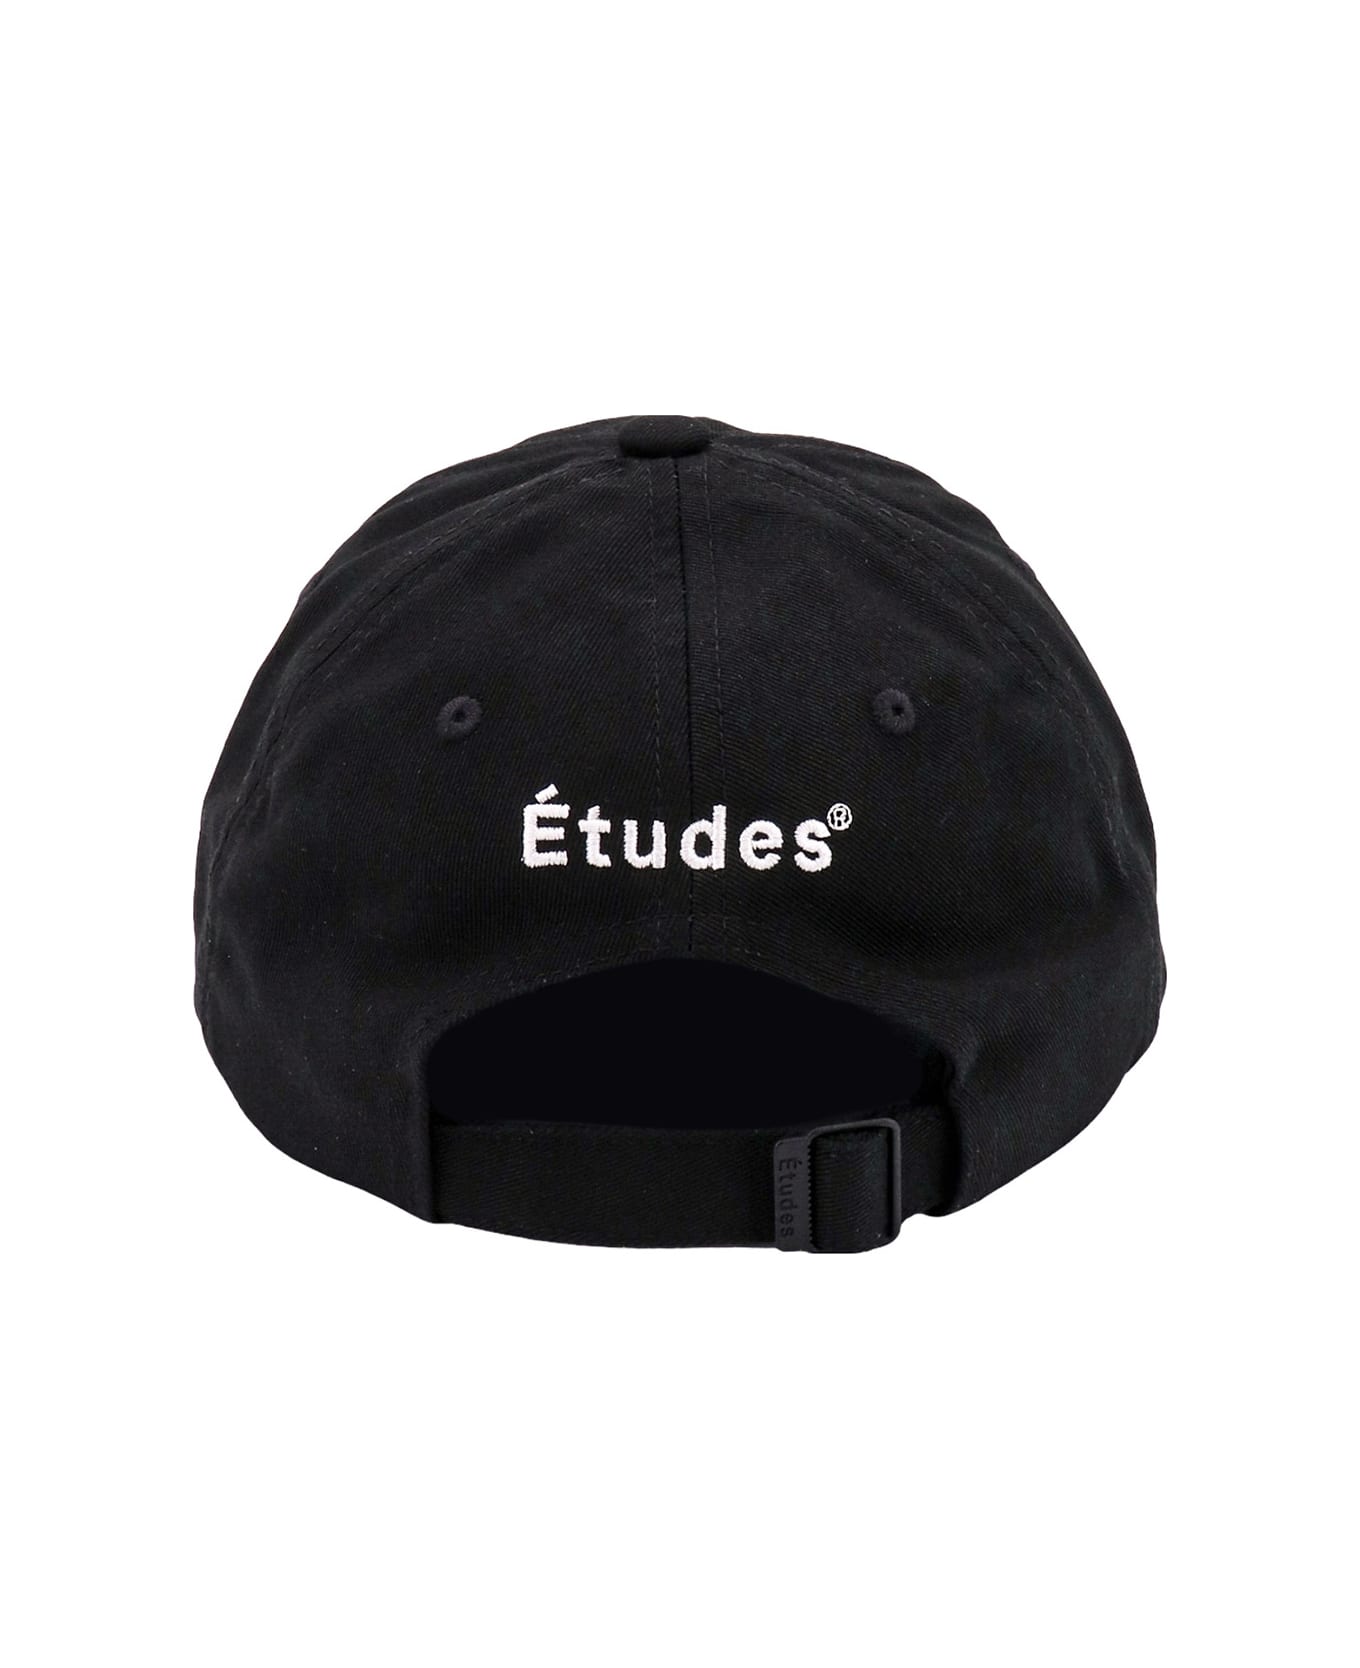 Études Booster Hat - Black